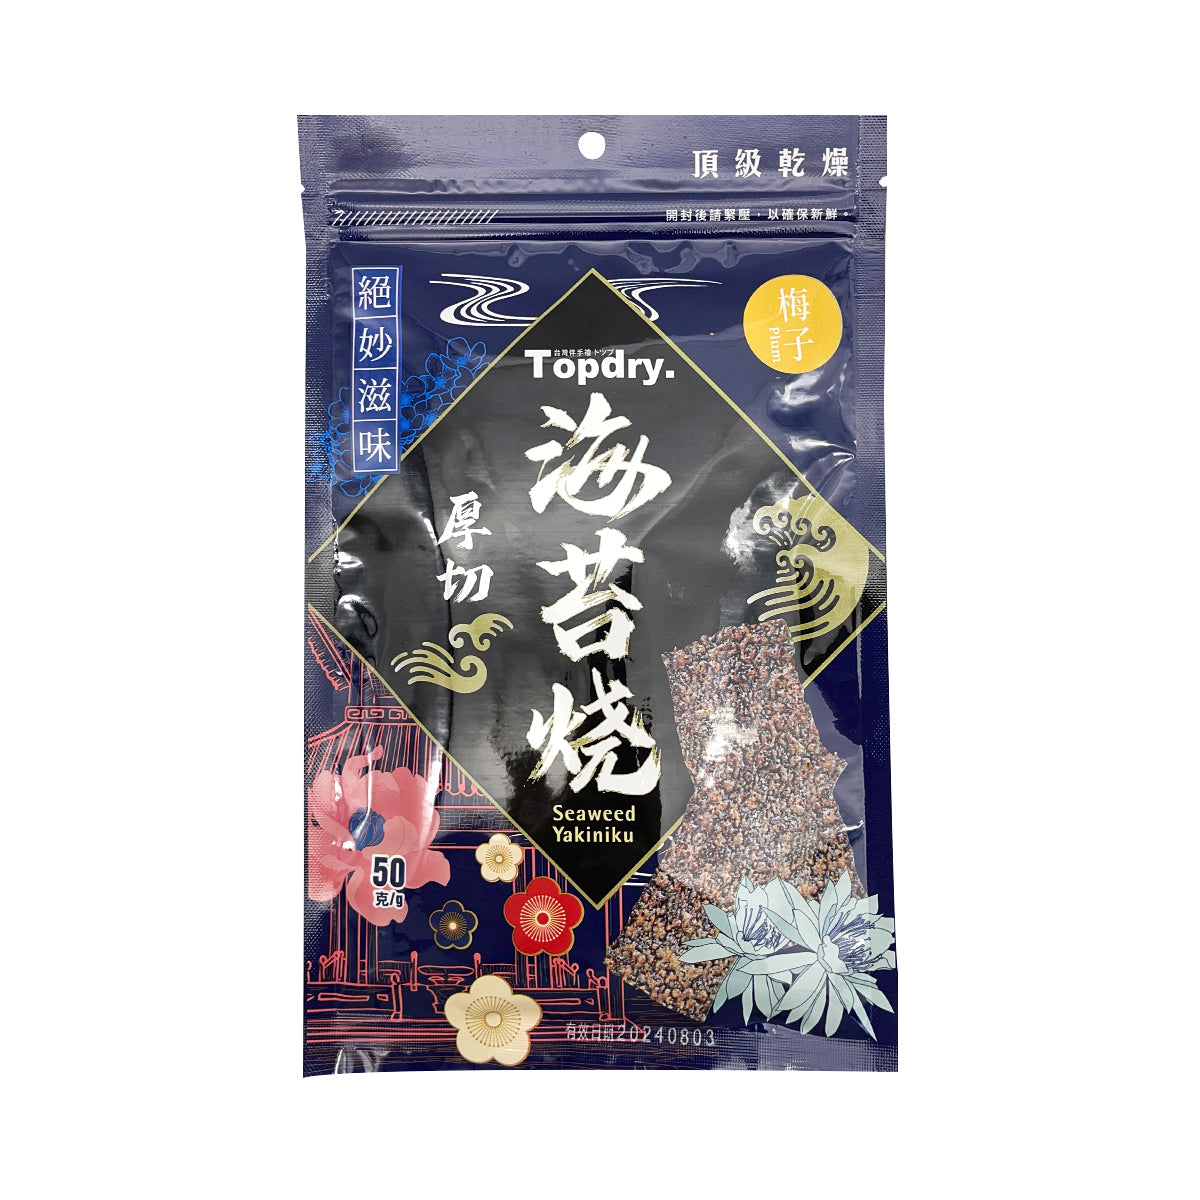 【TOP DRY 】Genki BBQ Roasted Seaweed (Plum) 50g